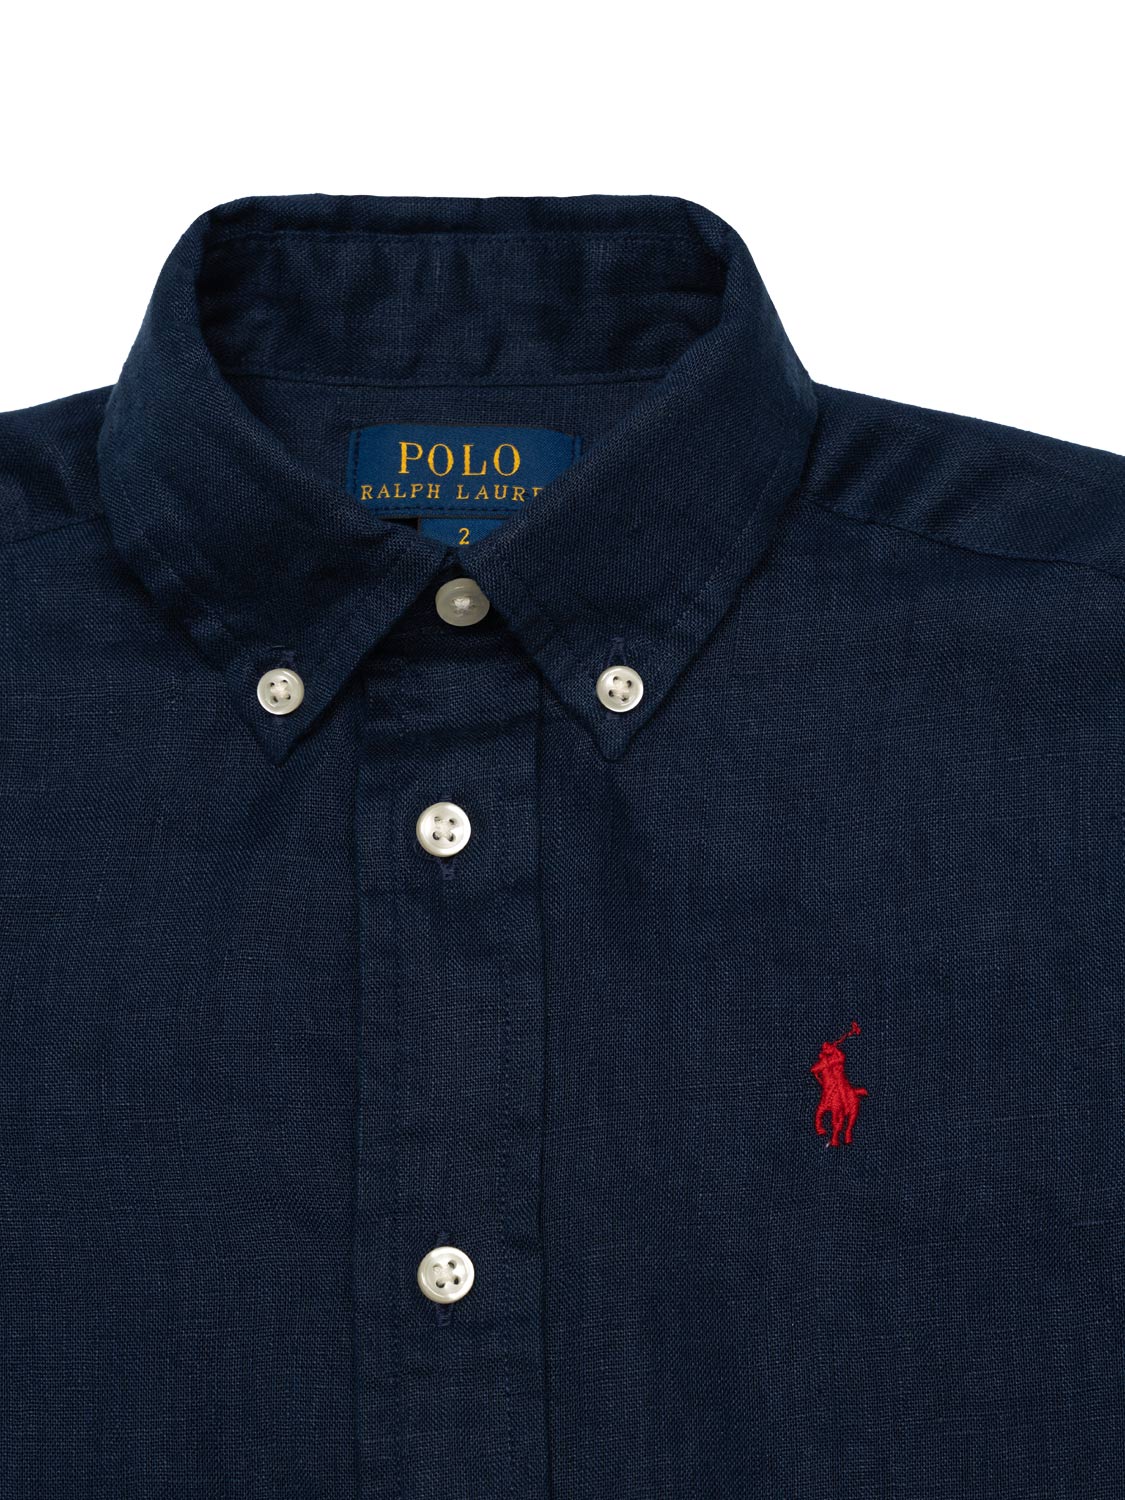 Leinenhemd mit Polo-Stickerei - Navy